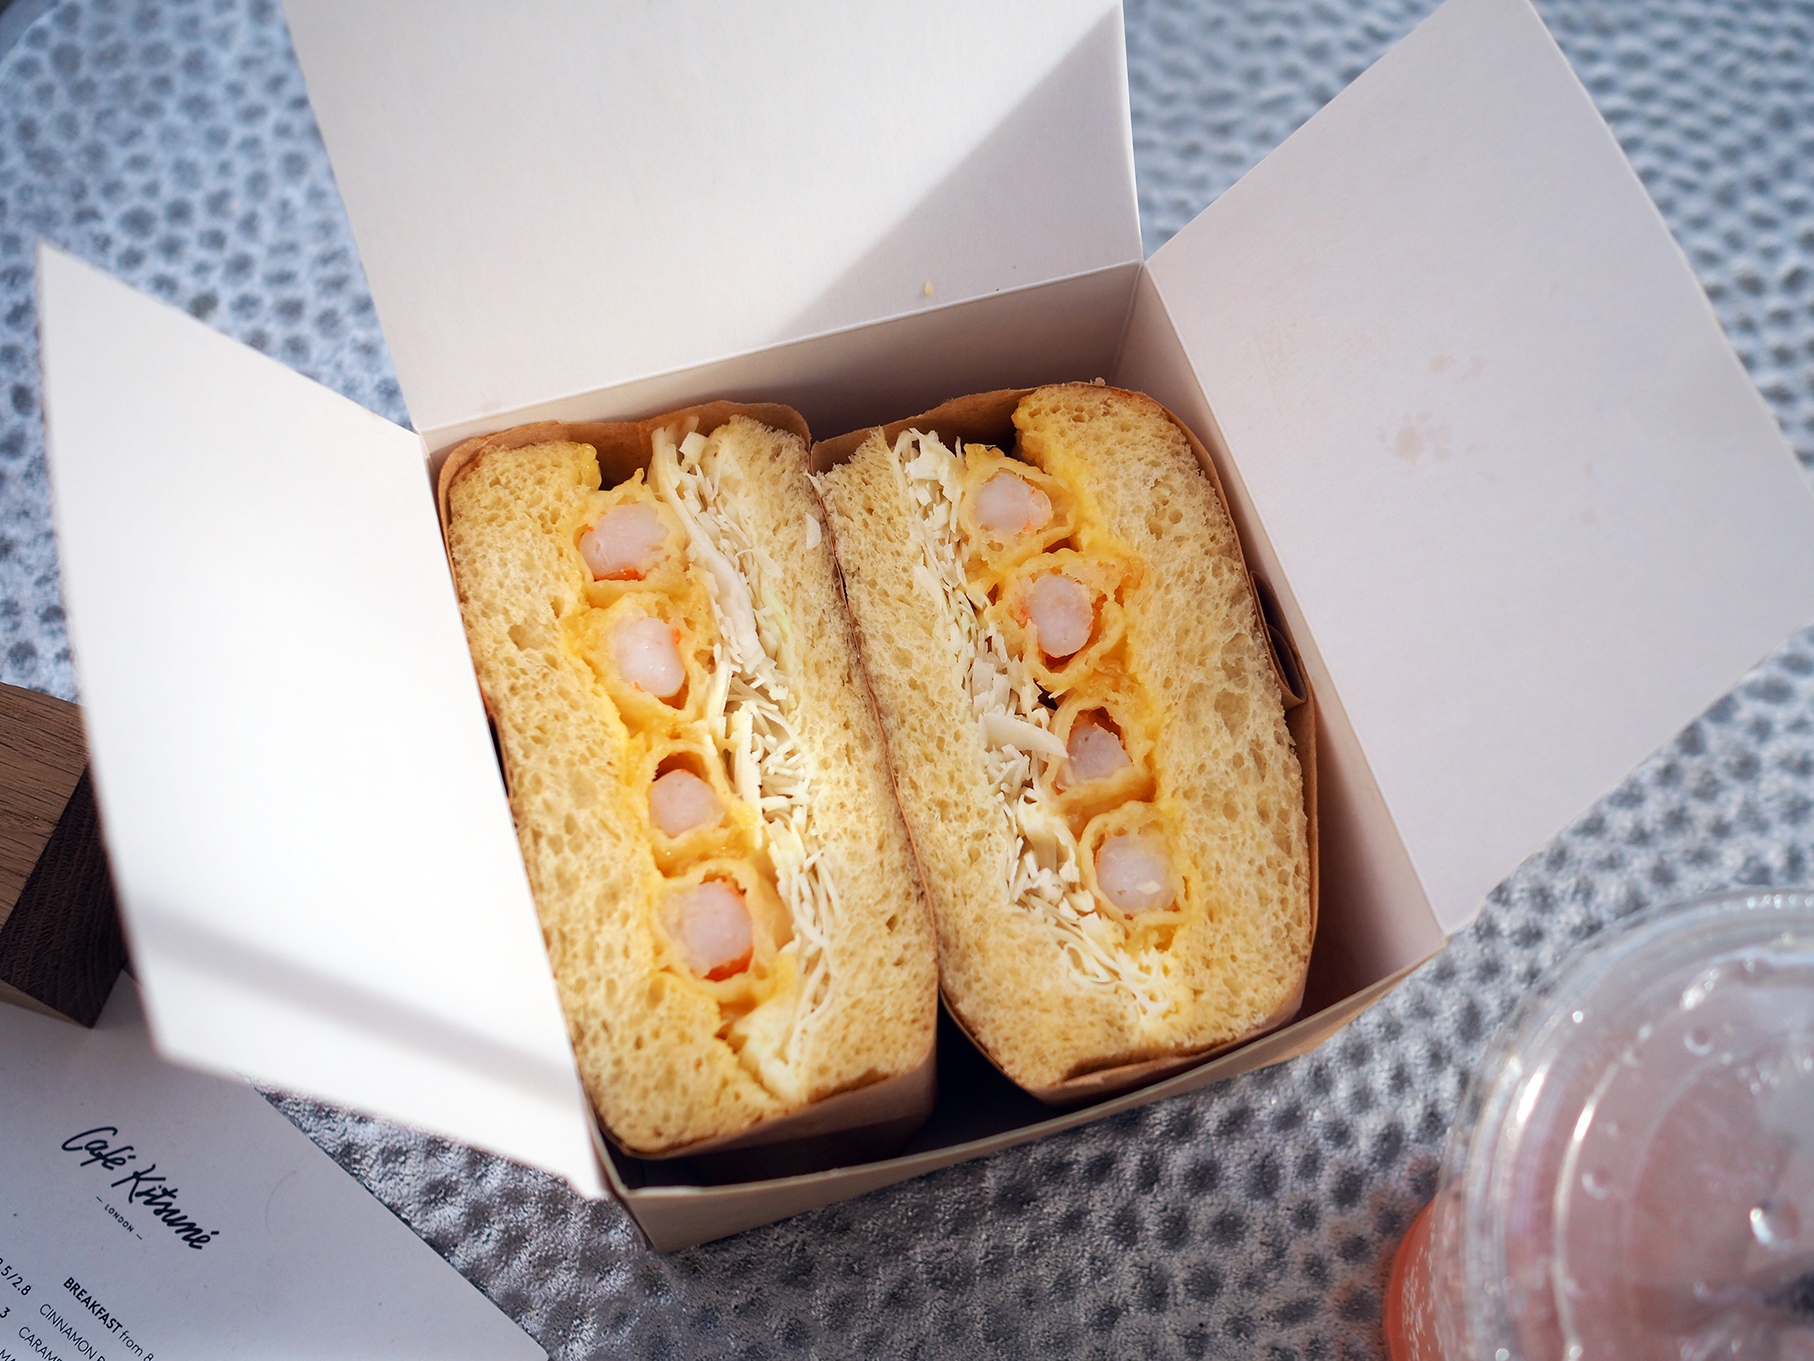 Café Kitsuné London Shrimp sando and yuzu mayo